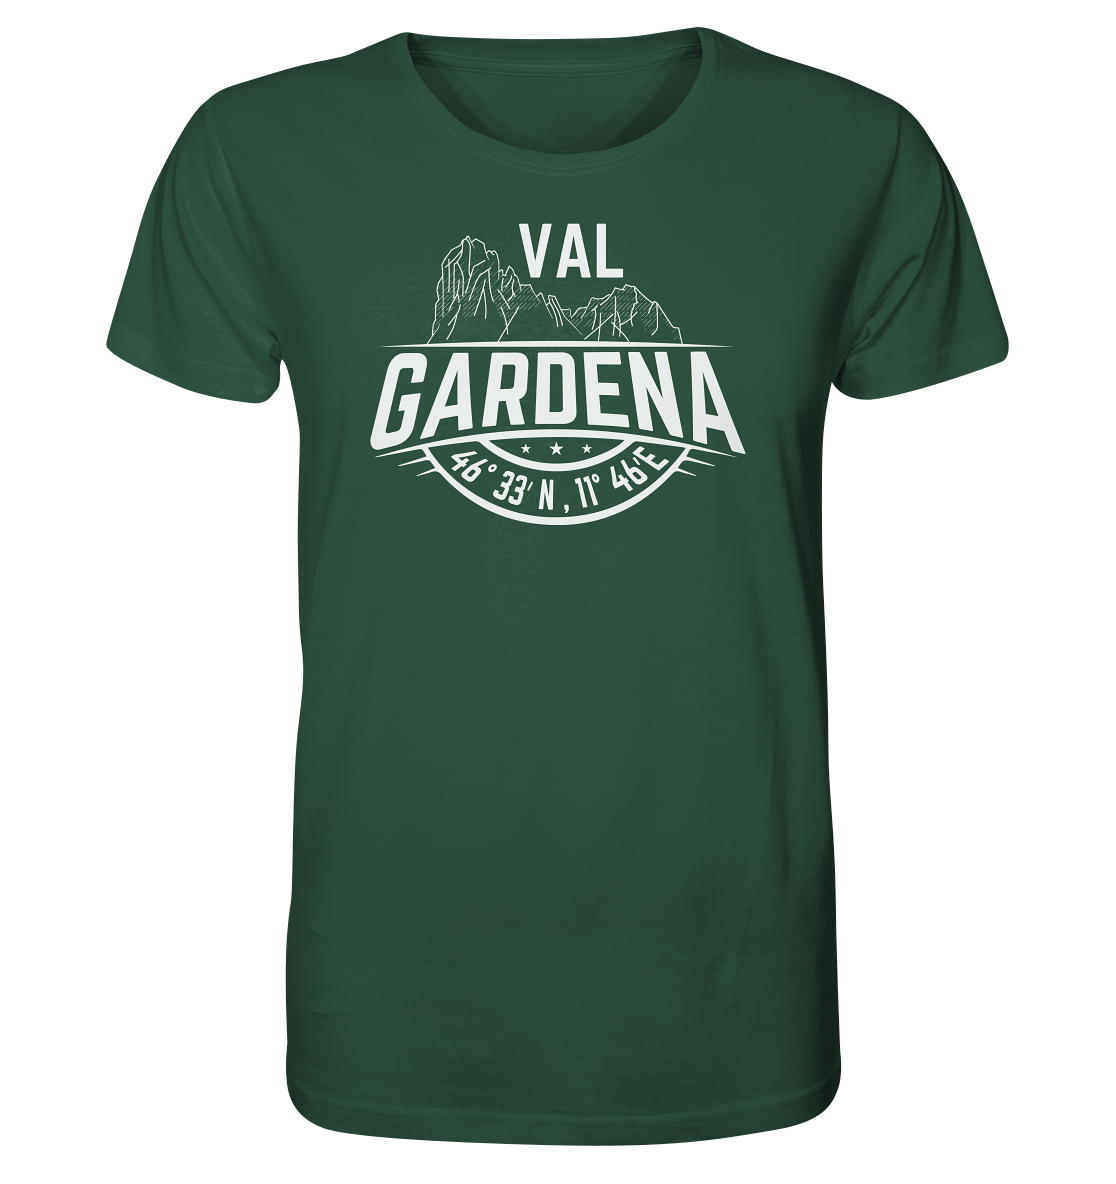 Val Gardena Koordinaten - Herren Premium T-Shirt